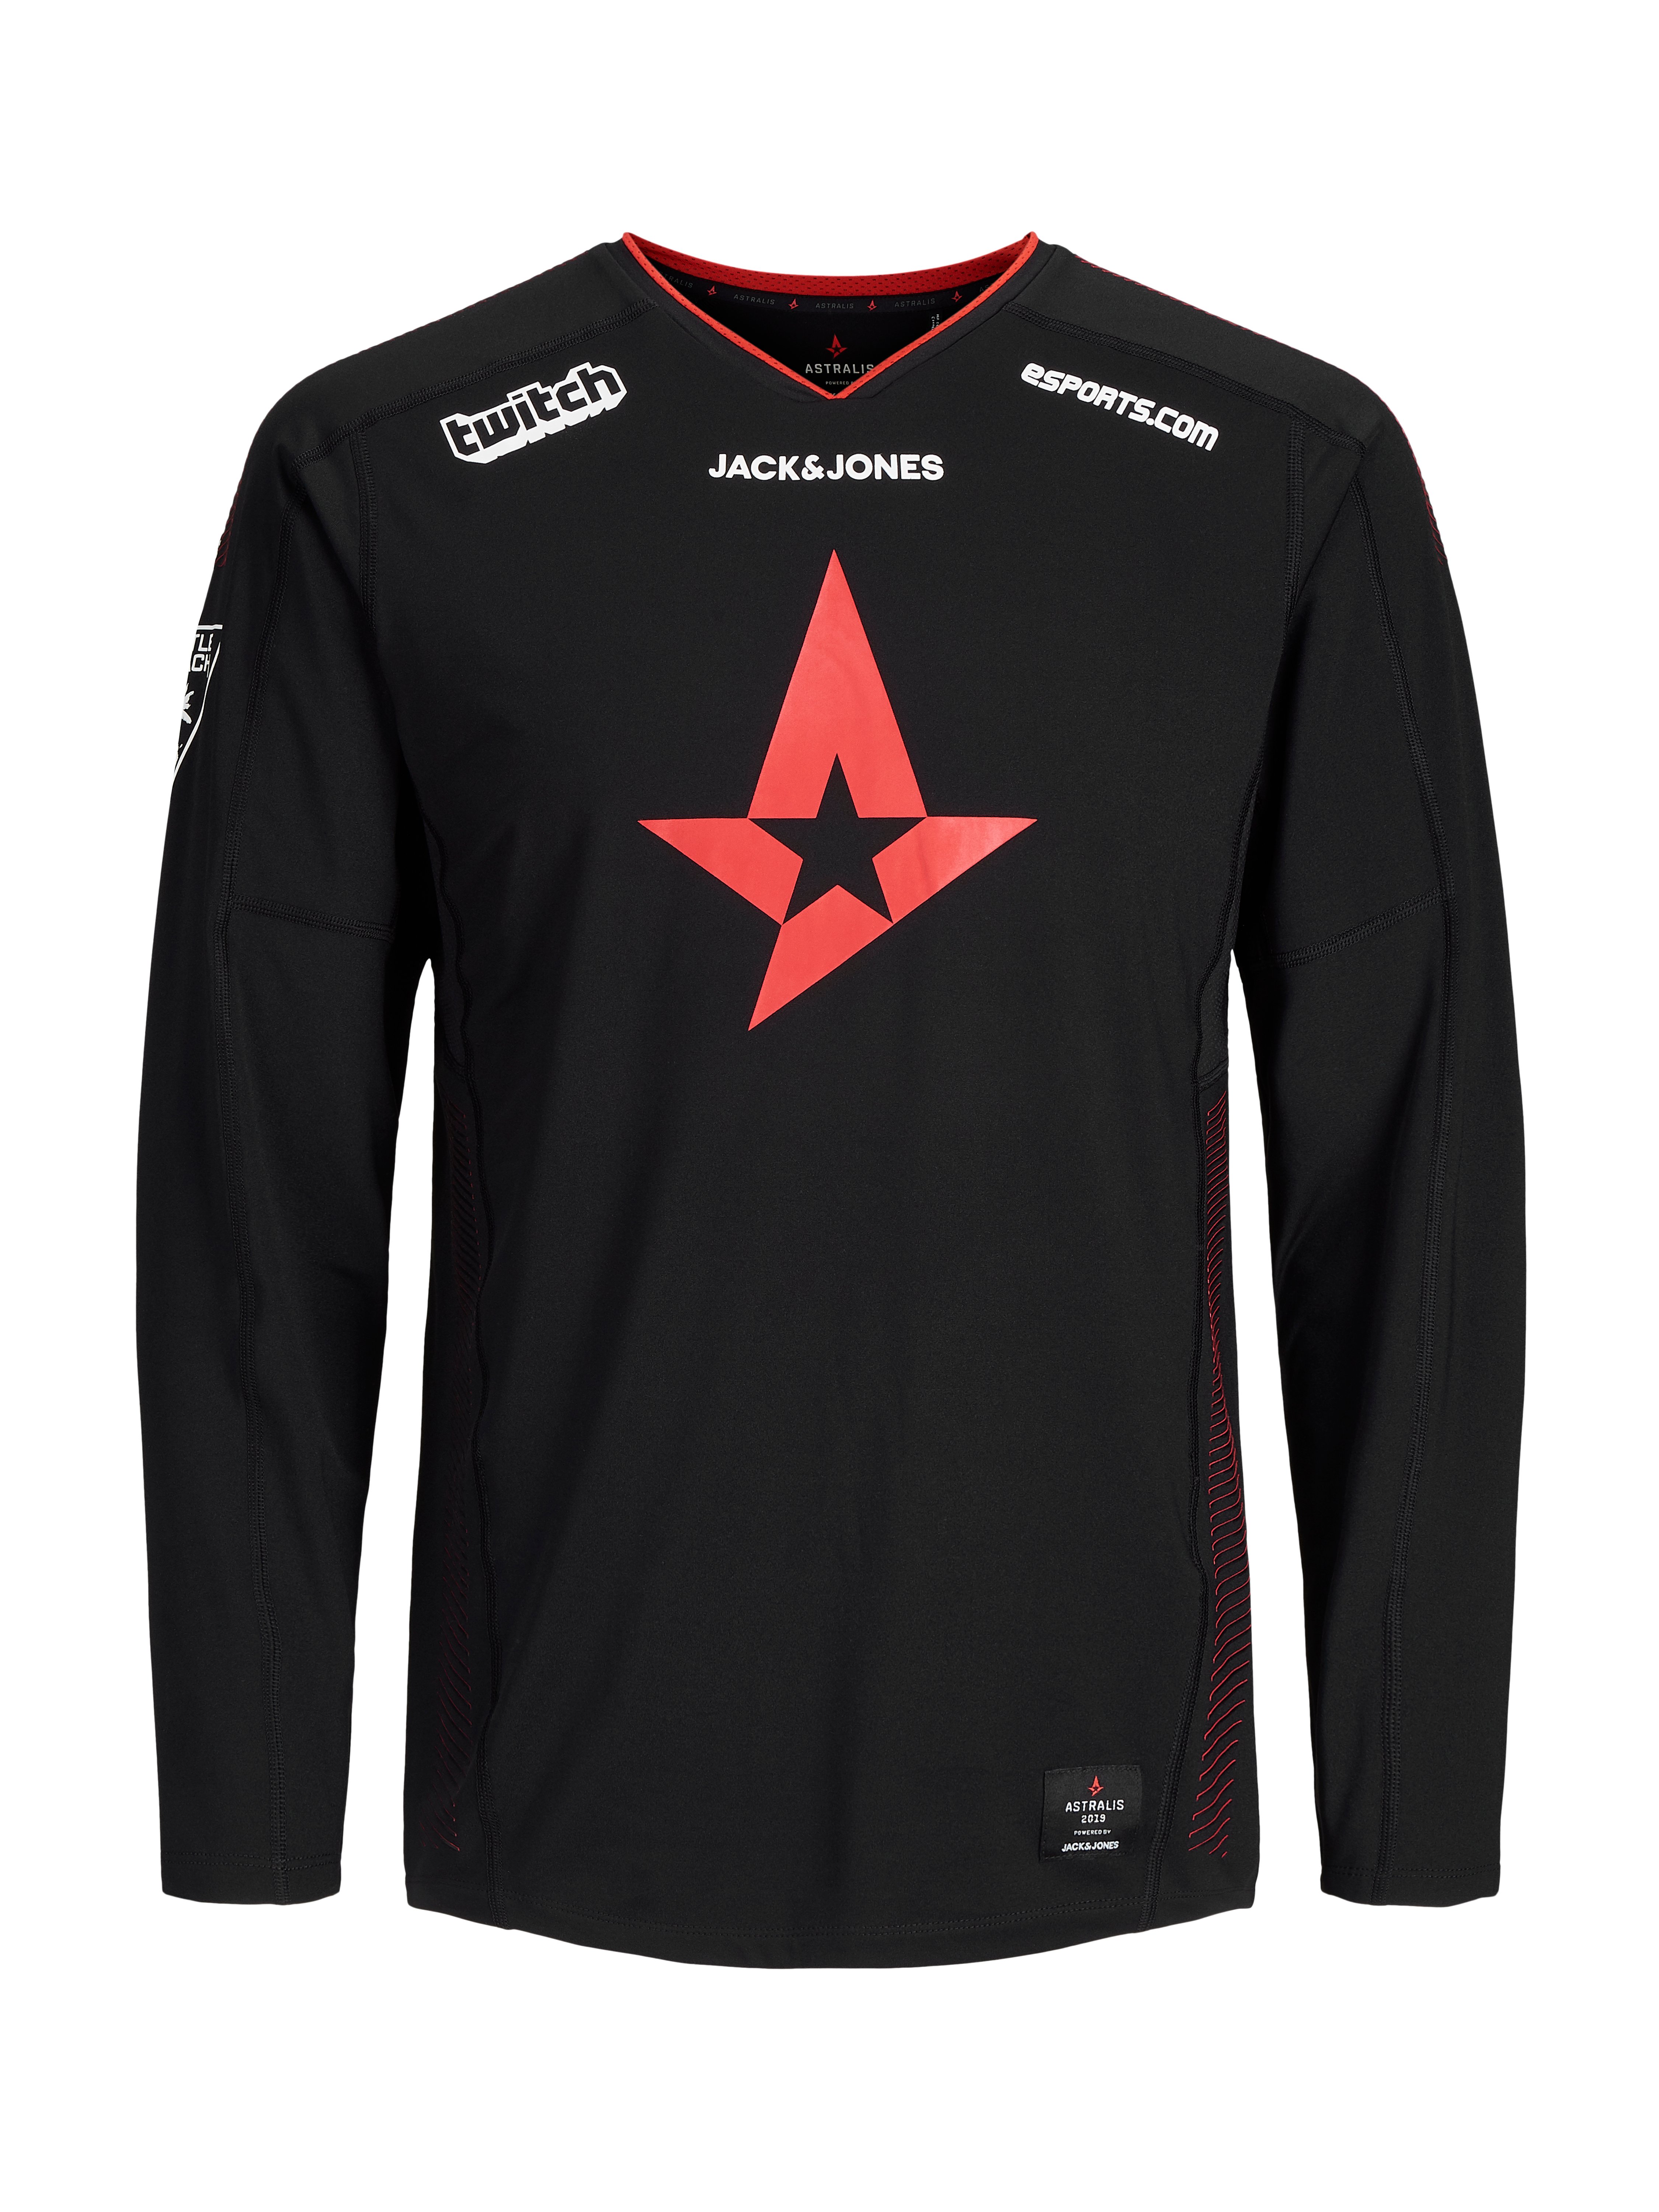 Astralis Merc Official T-Shirt LS 2019 - XXXL